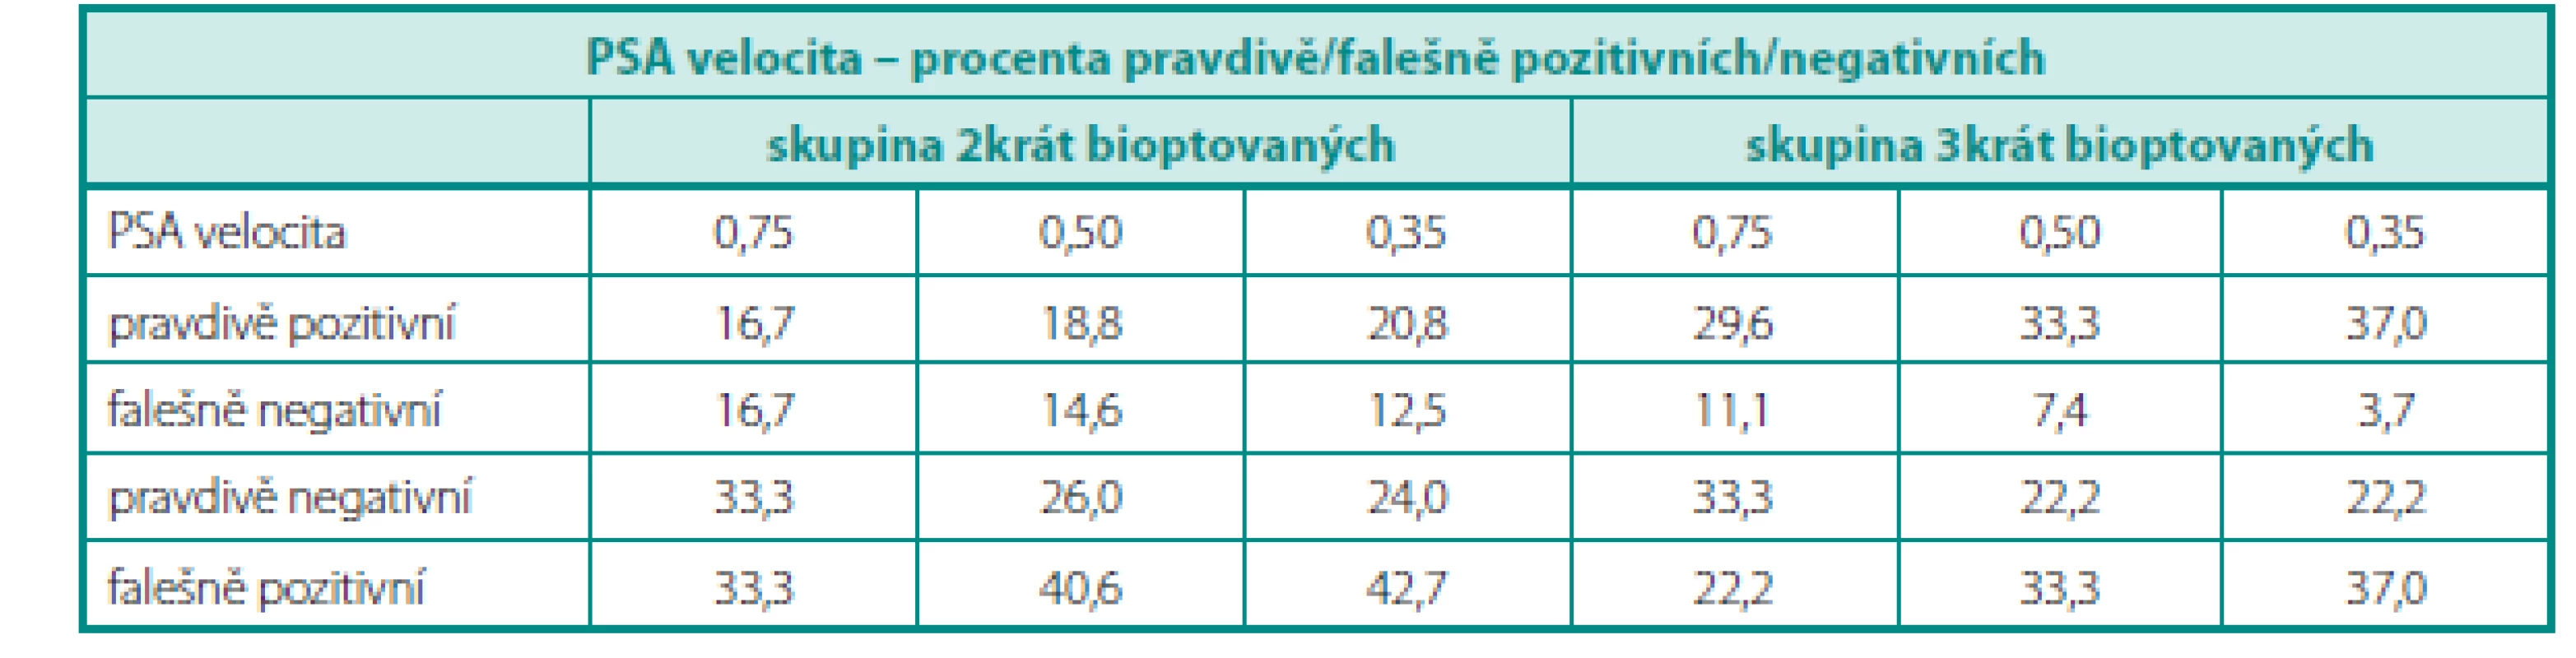 PSA velocita – procenta pravdivě/falešně pozitivních/negativních 
Table 6. PSA velocity – percentages of true/false positives/negatives